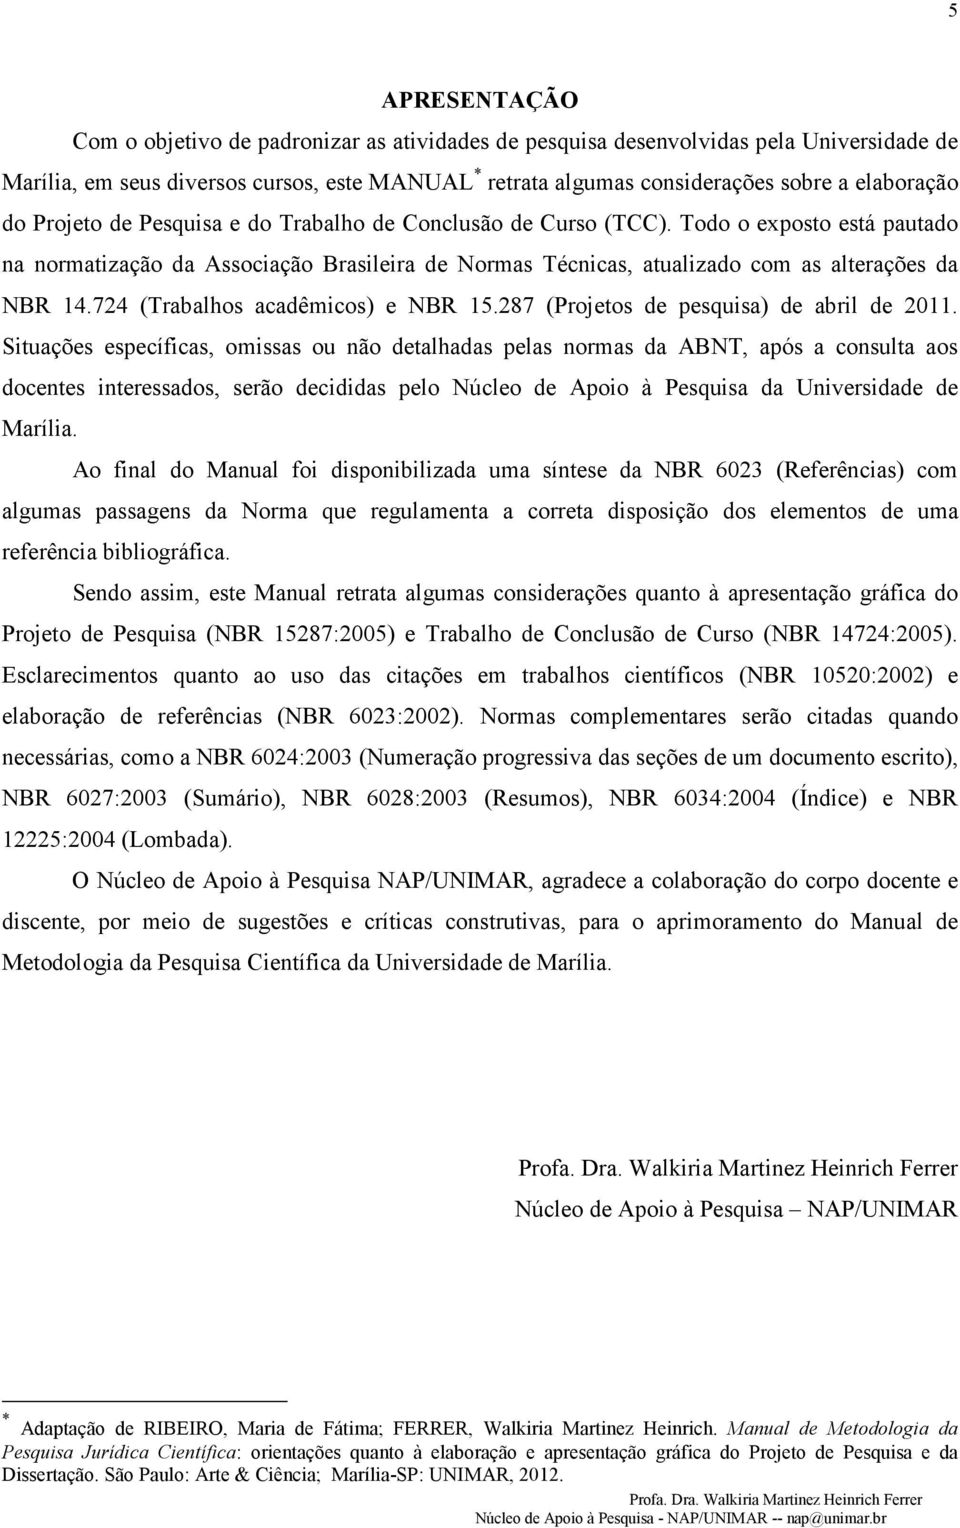 Todo o exposto está pautado na normatização da Associação Brasileira de Normas Técnicas, atualizado com as alterações da NBR 14.724 (Trabalhos acadêmicos) e NBR 15.